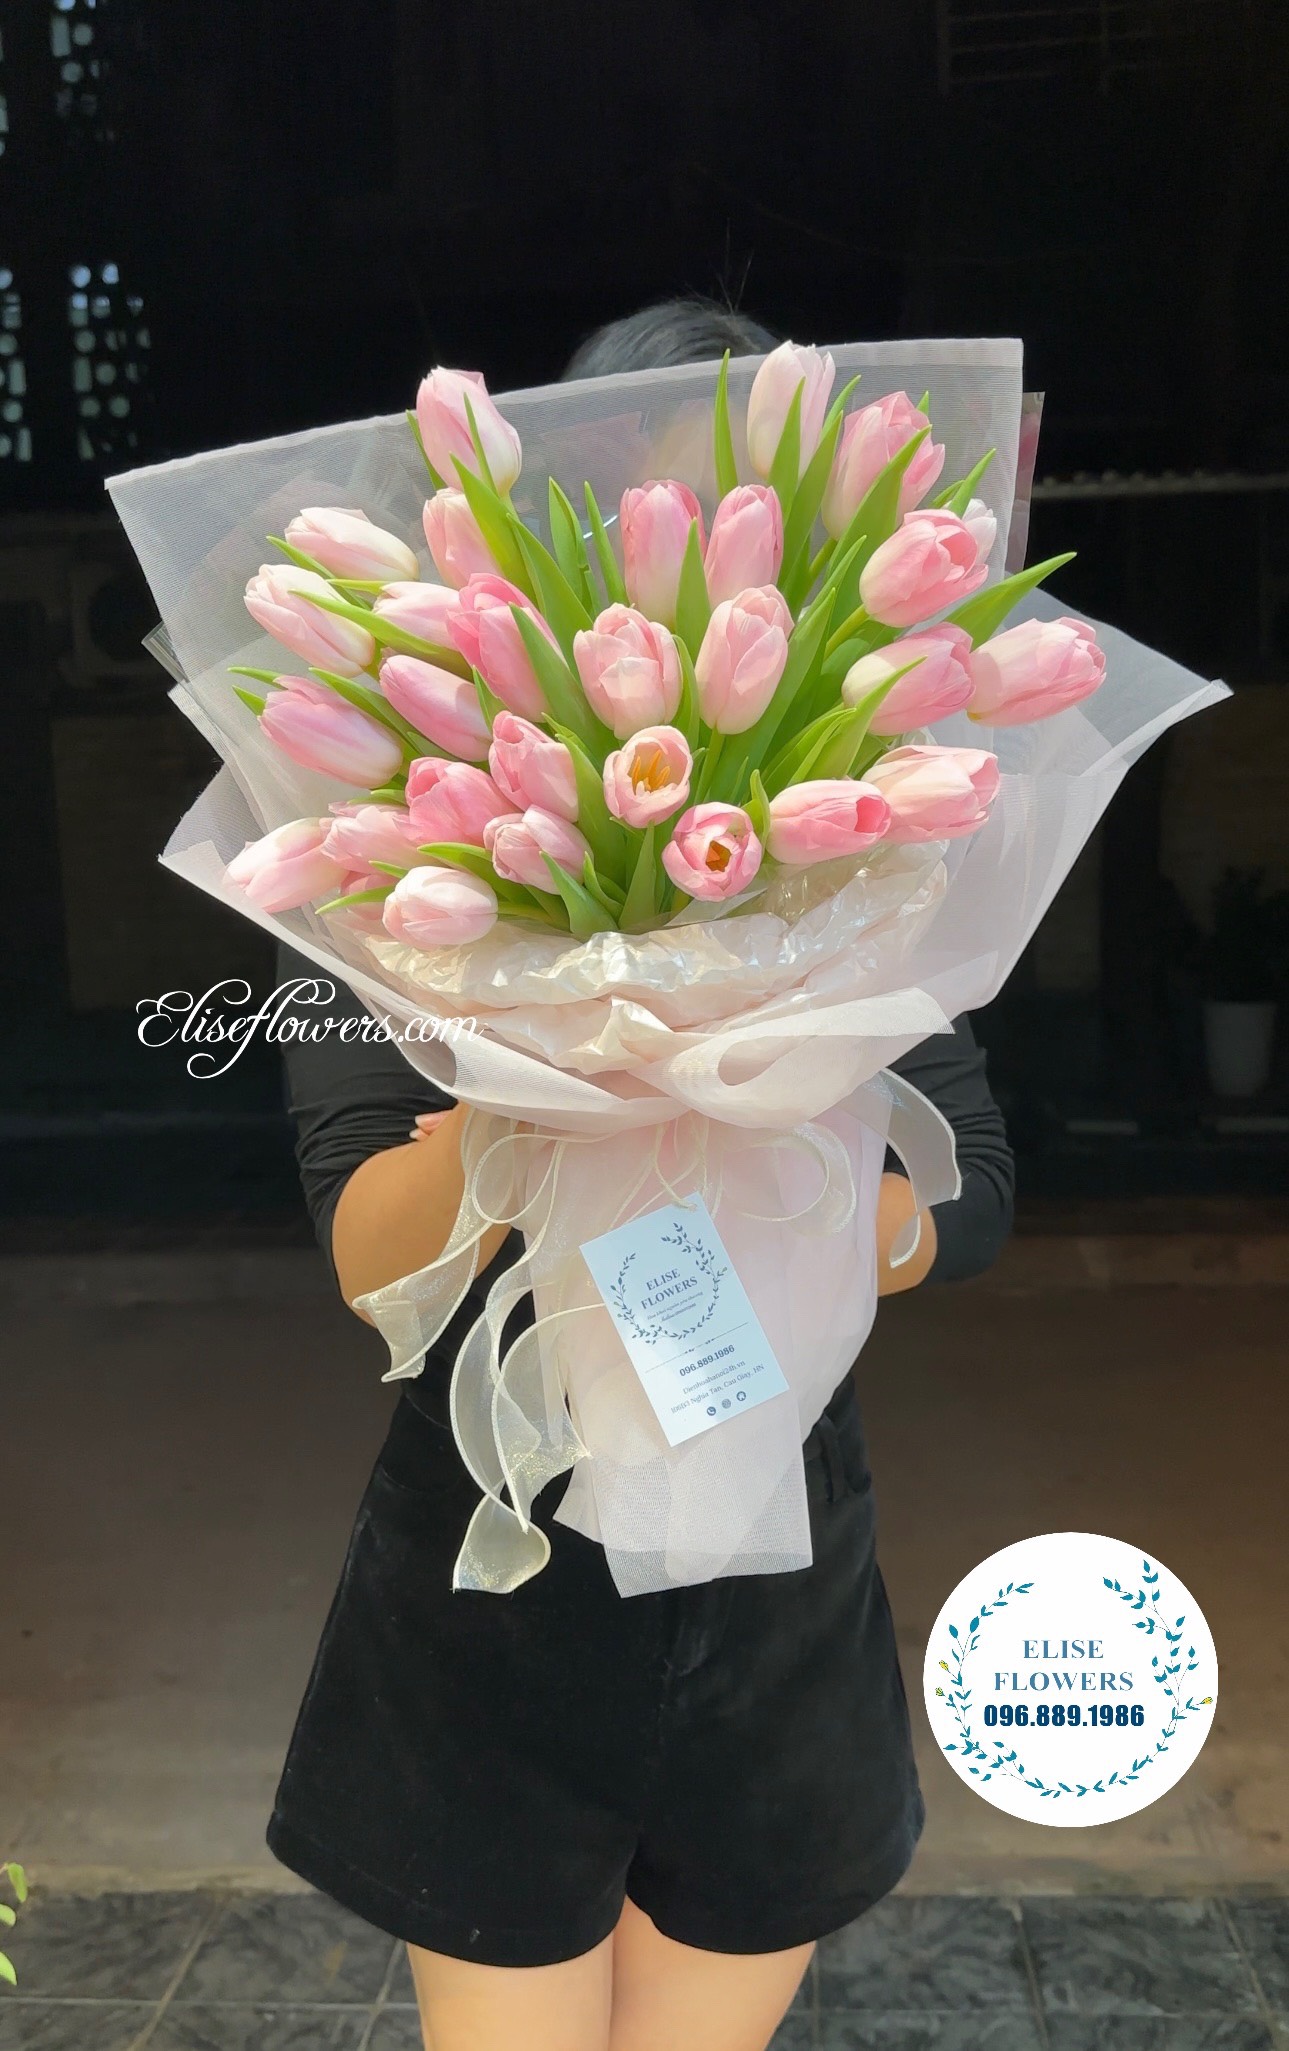 Hoa tặng 8/3 ở Hà NộI. Hoa chúc mừng 8/3 ở Hà Nội. Bó hoa tulip tặng vợ ngày 8/3.Bó hoa tulip tặng bạn gái 8/3.